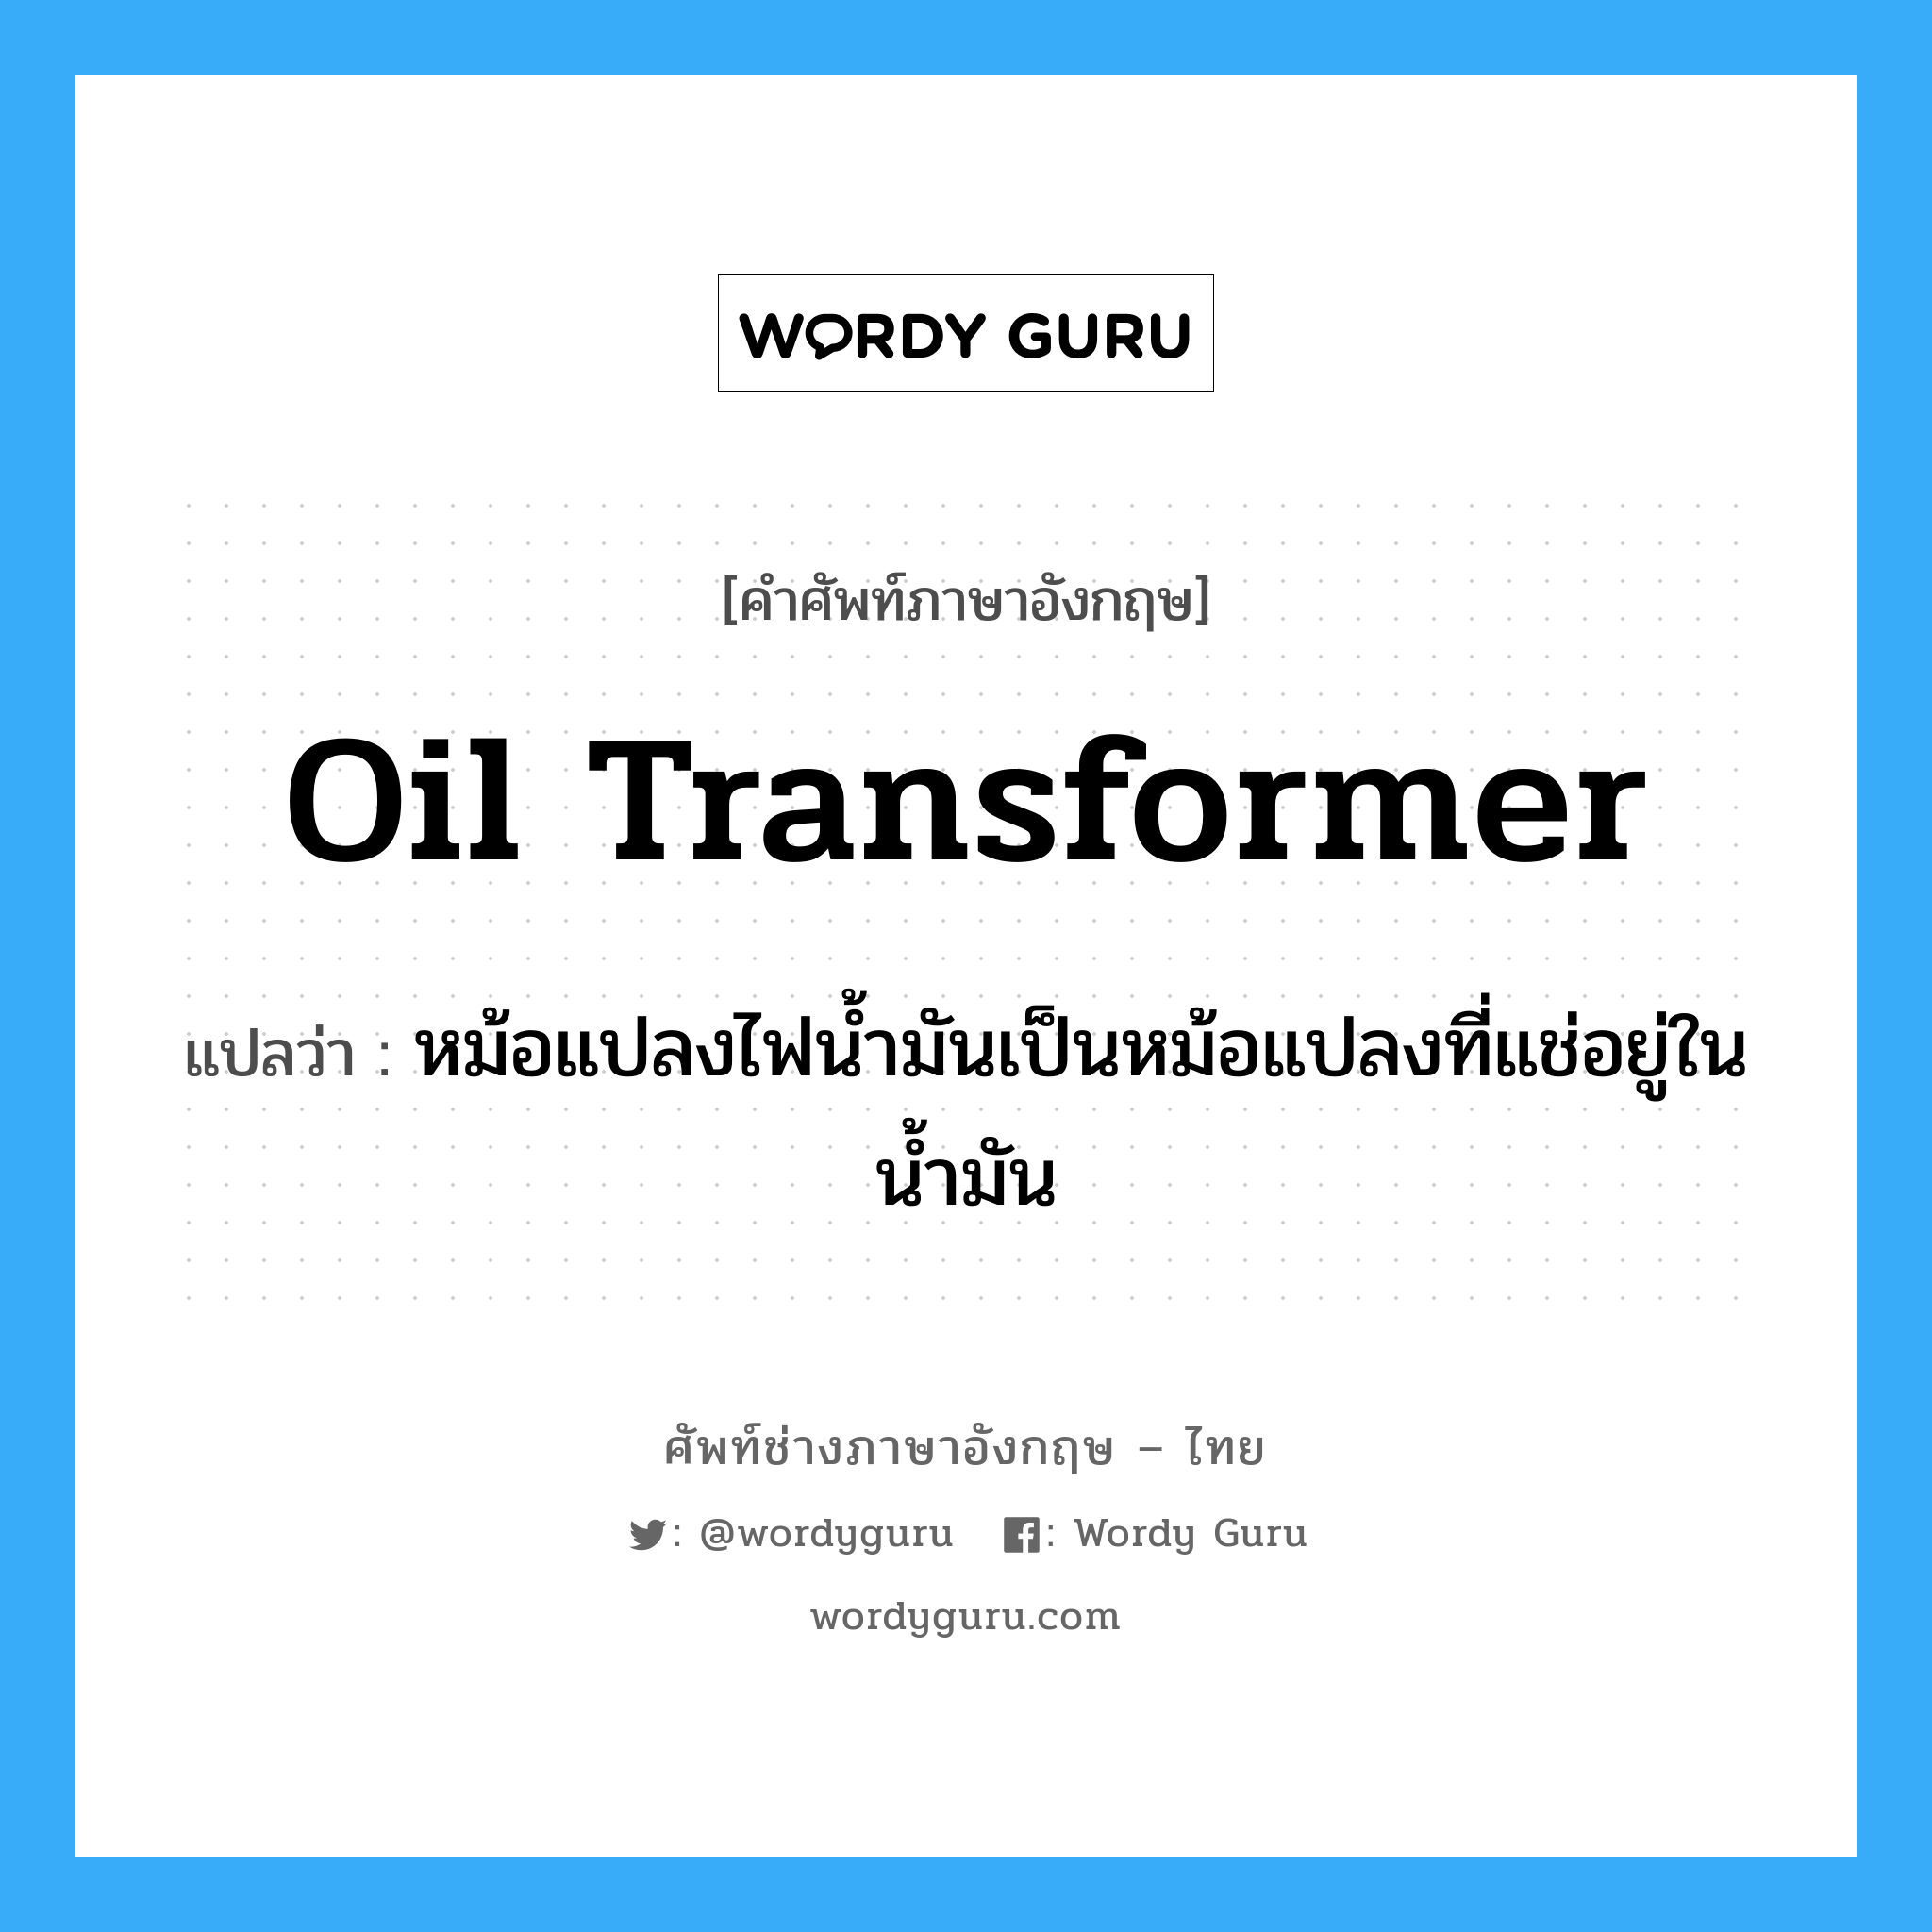 oil transformer แปลว่า?, คำศัพท์ช่างภาษาอังกฤษ - ไทย oil transformer คำศัพท์ภาษาอังกฤษ oil transformer แปลว่า หม้อแปลงไฟน้ำมันเป็นหม้อแปลงที่แช่อยู่ในน้ำมัน